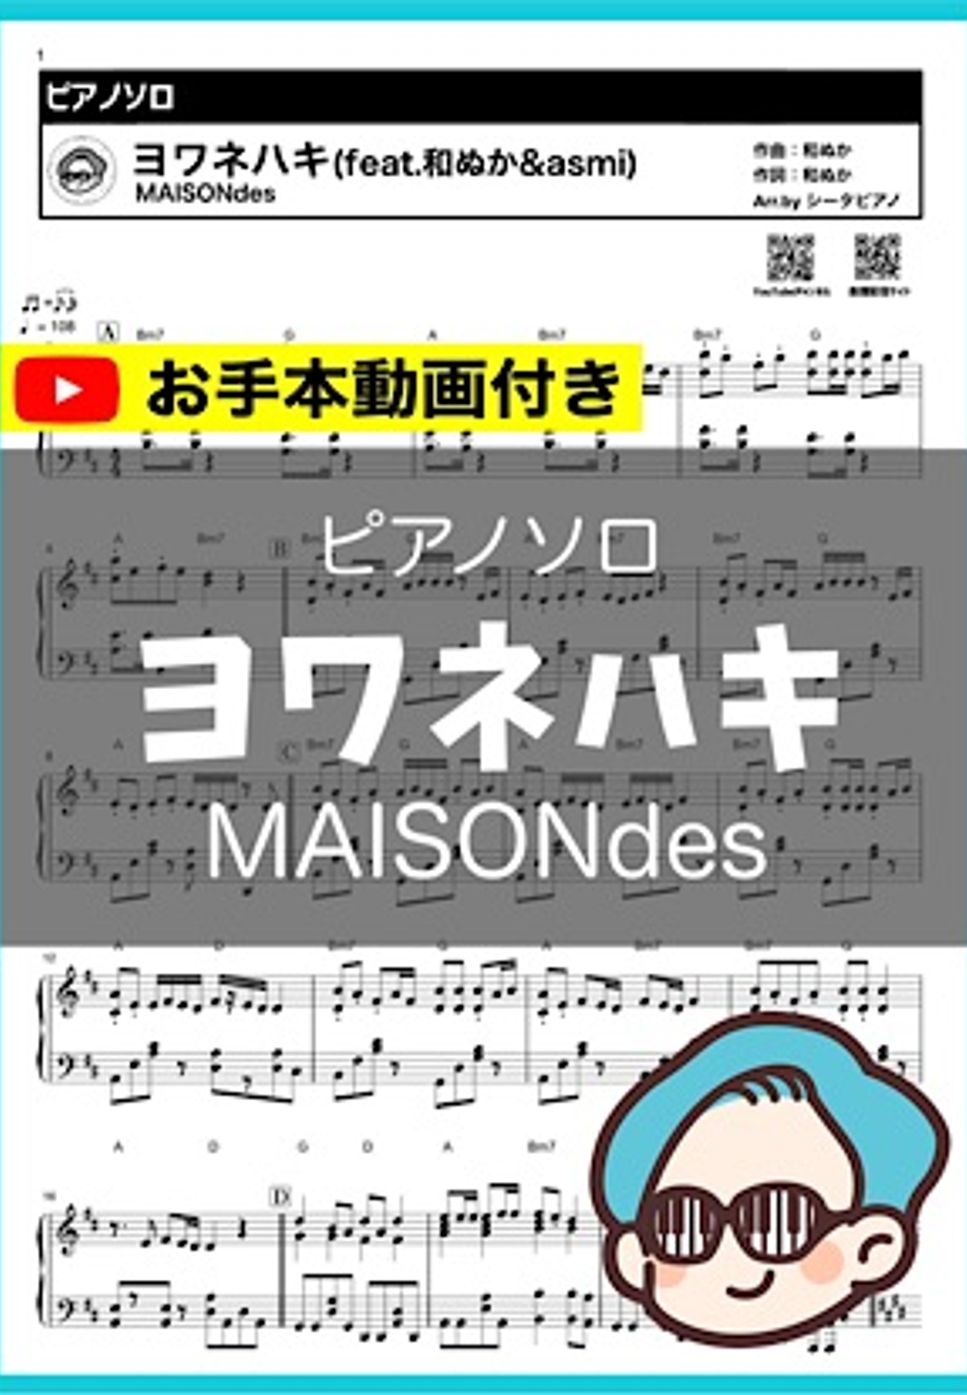 MAISON des feat.和ぬか,asmi - ヨワネハキ by シータピアノ